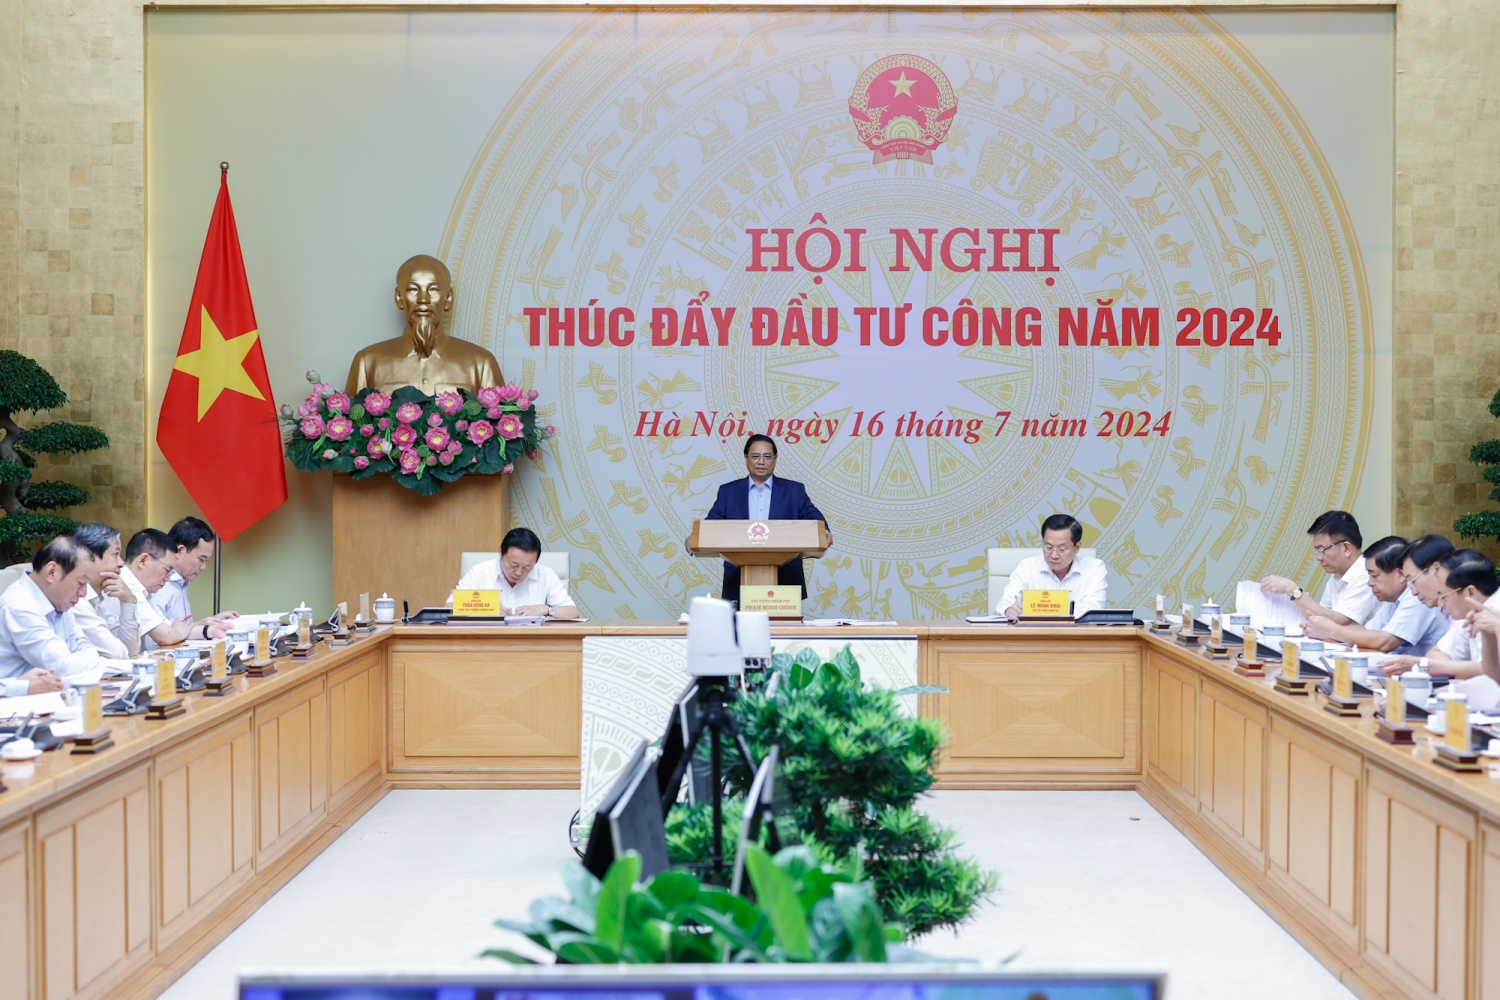 Thủ tướng Phạm Minh Chính chủ trì Hội nghị trực tuyến toàn quốc của Thường trực Chính phủ về thúc đẩy đầu tư công năm 2024.